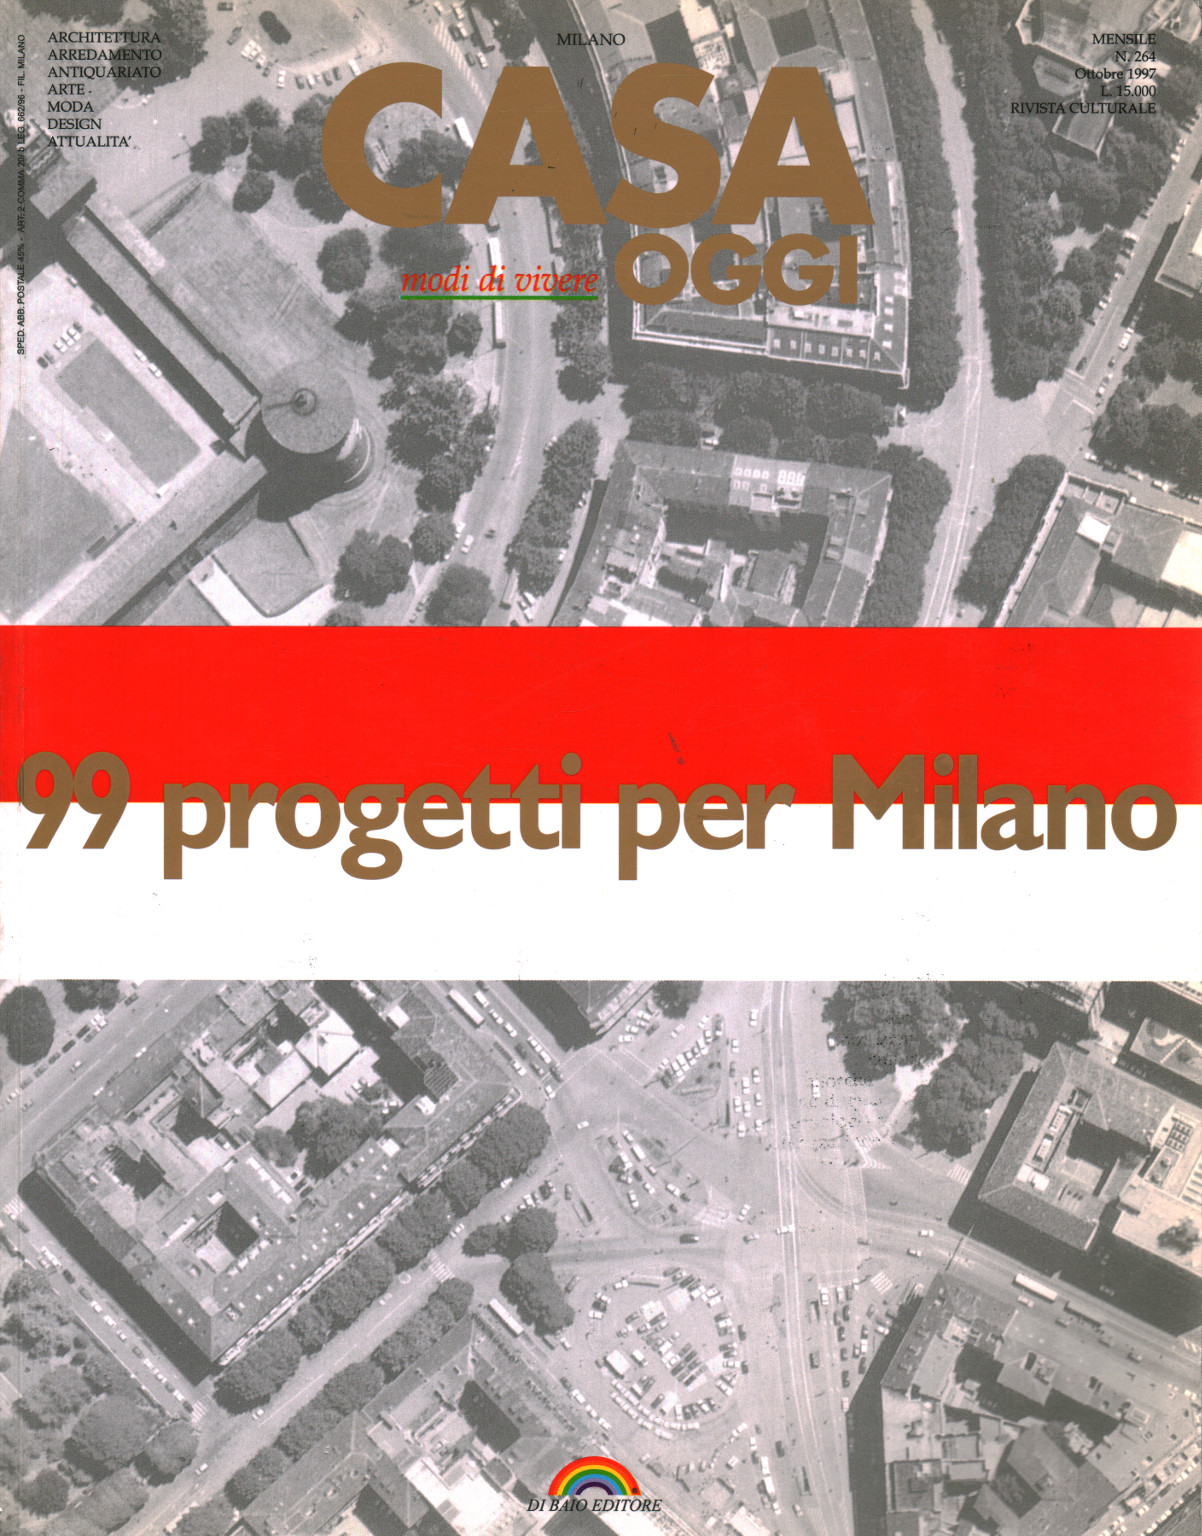 99 progetti per Milano, s.a.